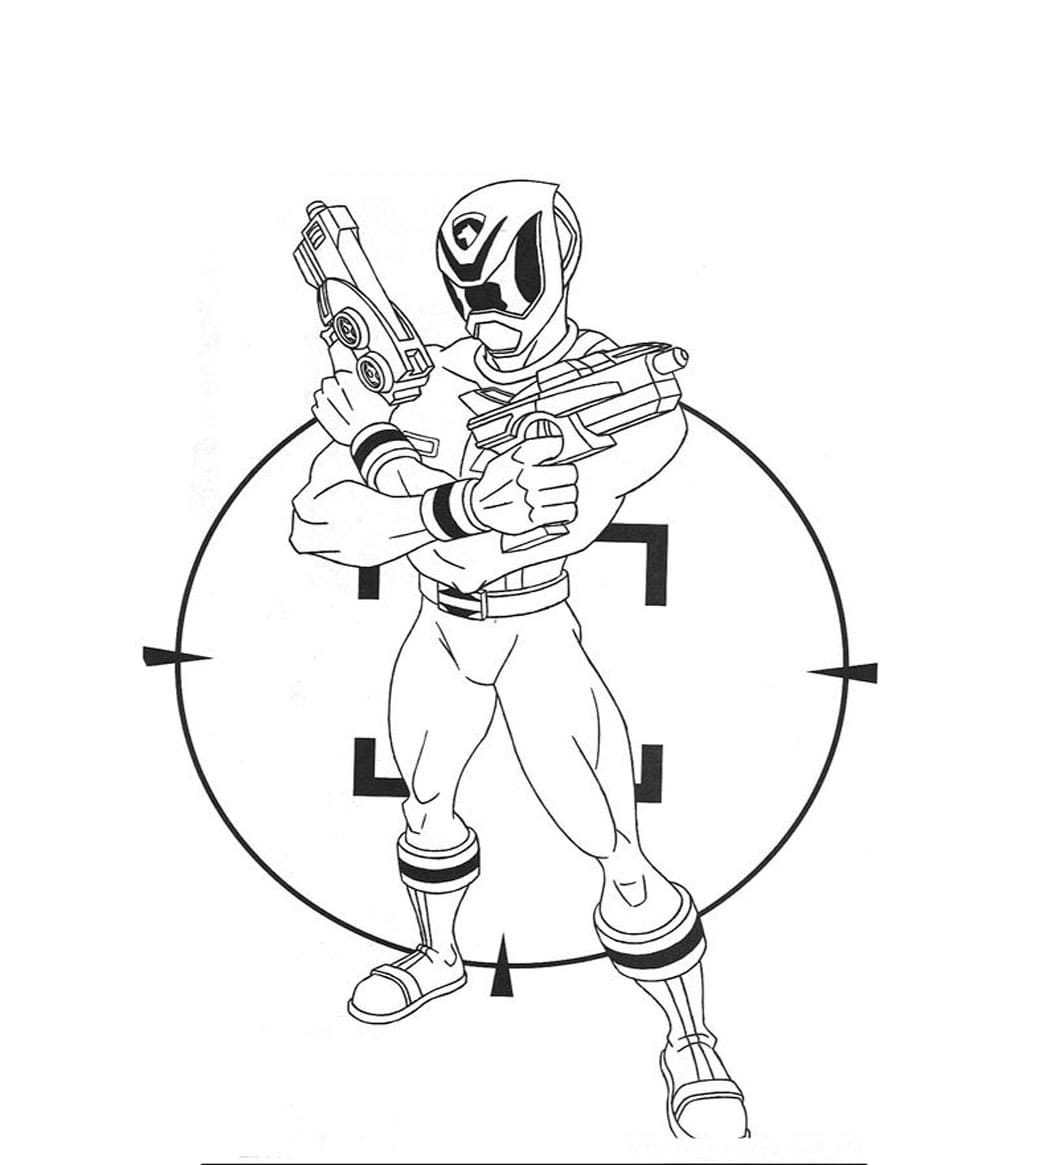 Drucken Sie das Power Ranger-Bild